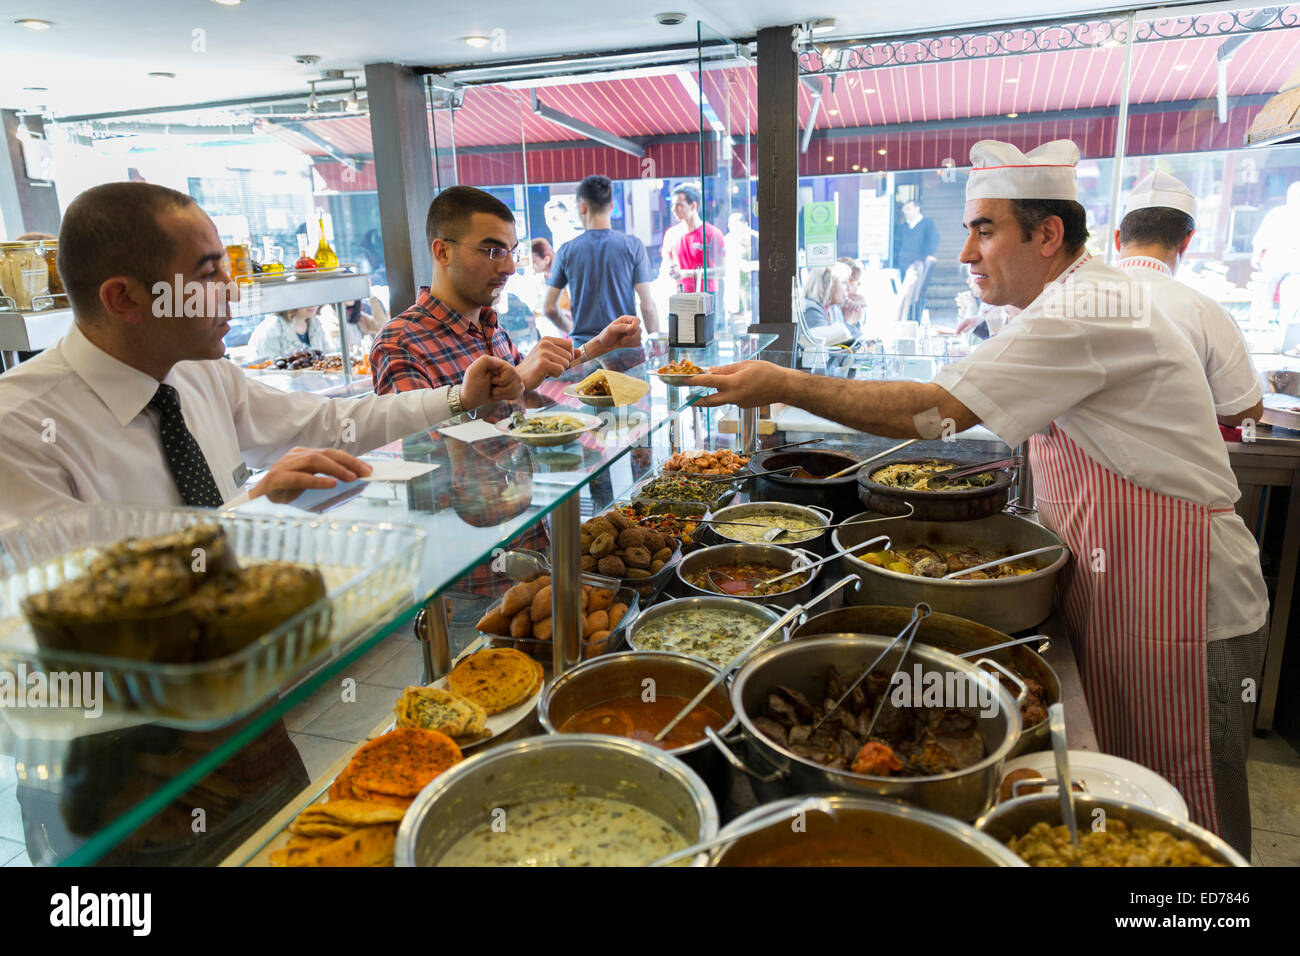 Köche im Ciya Sofrasi türkische Restaurant mit osmanischen Spezialitäten in Kadiköy Bezirk asiatischen Seite Istanbul, Ost-Türkei Stockfoto